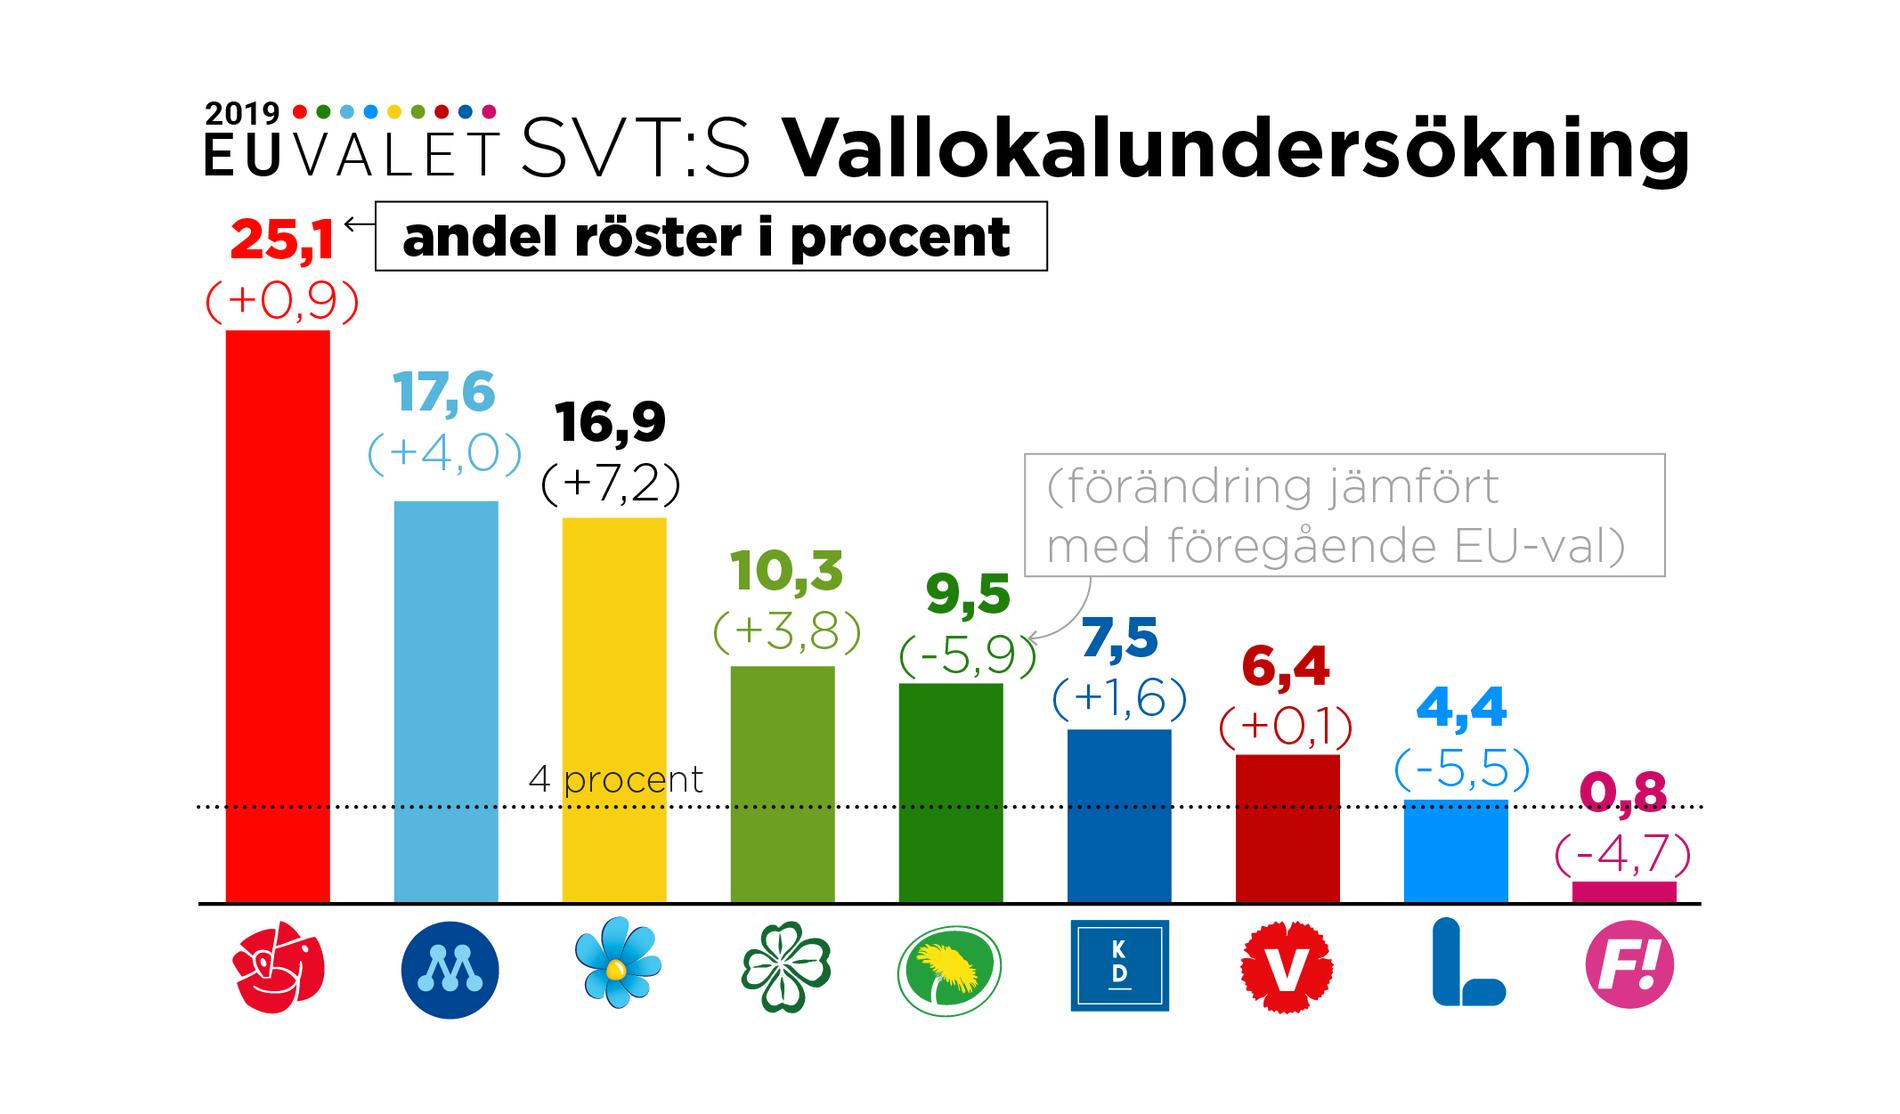 SVT:s vallokalsundersökning